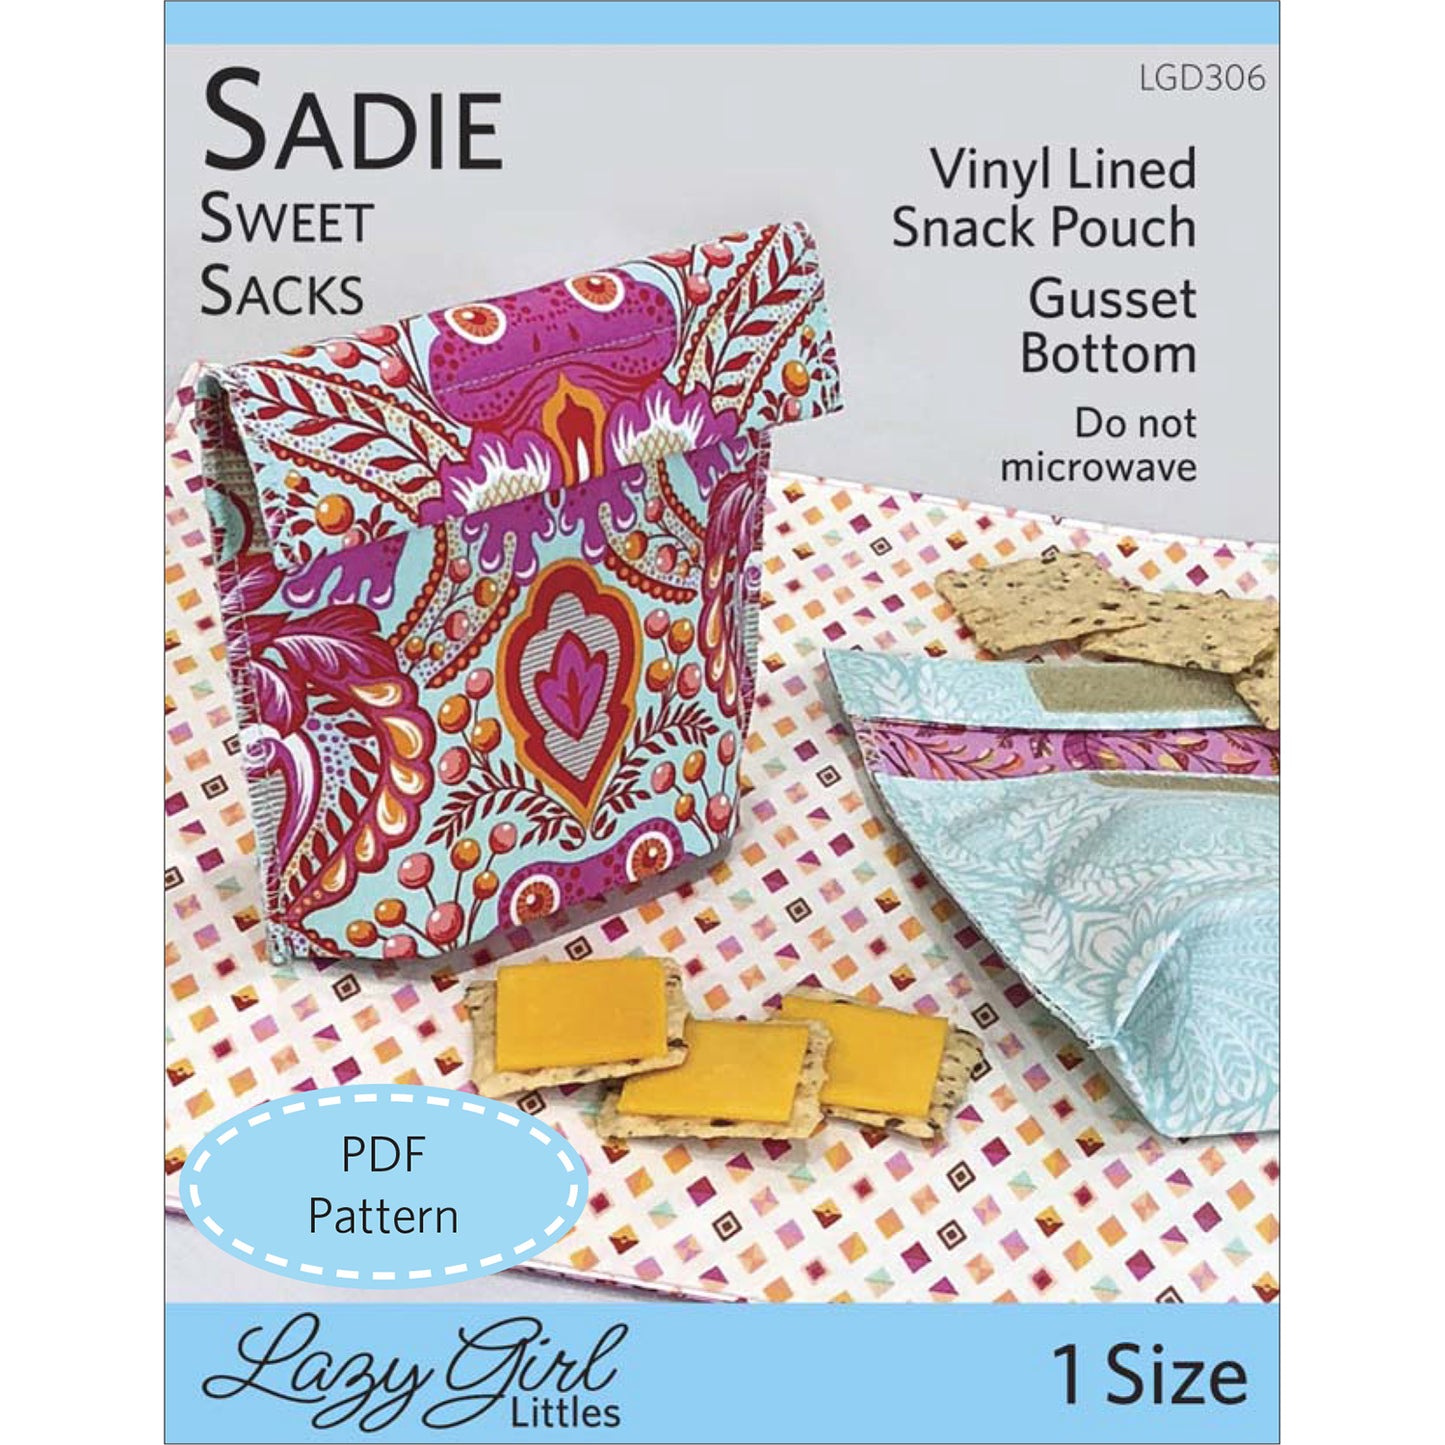 Sadie Sweet Sacks PDF Pattern